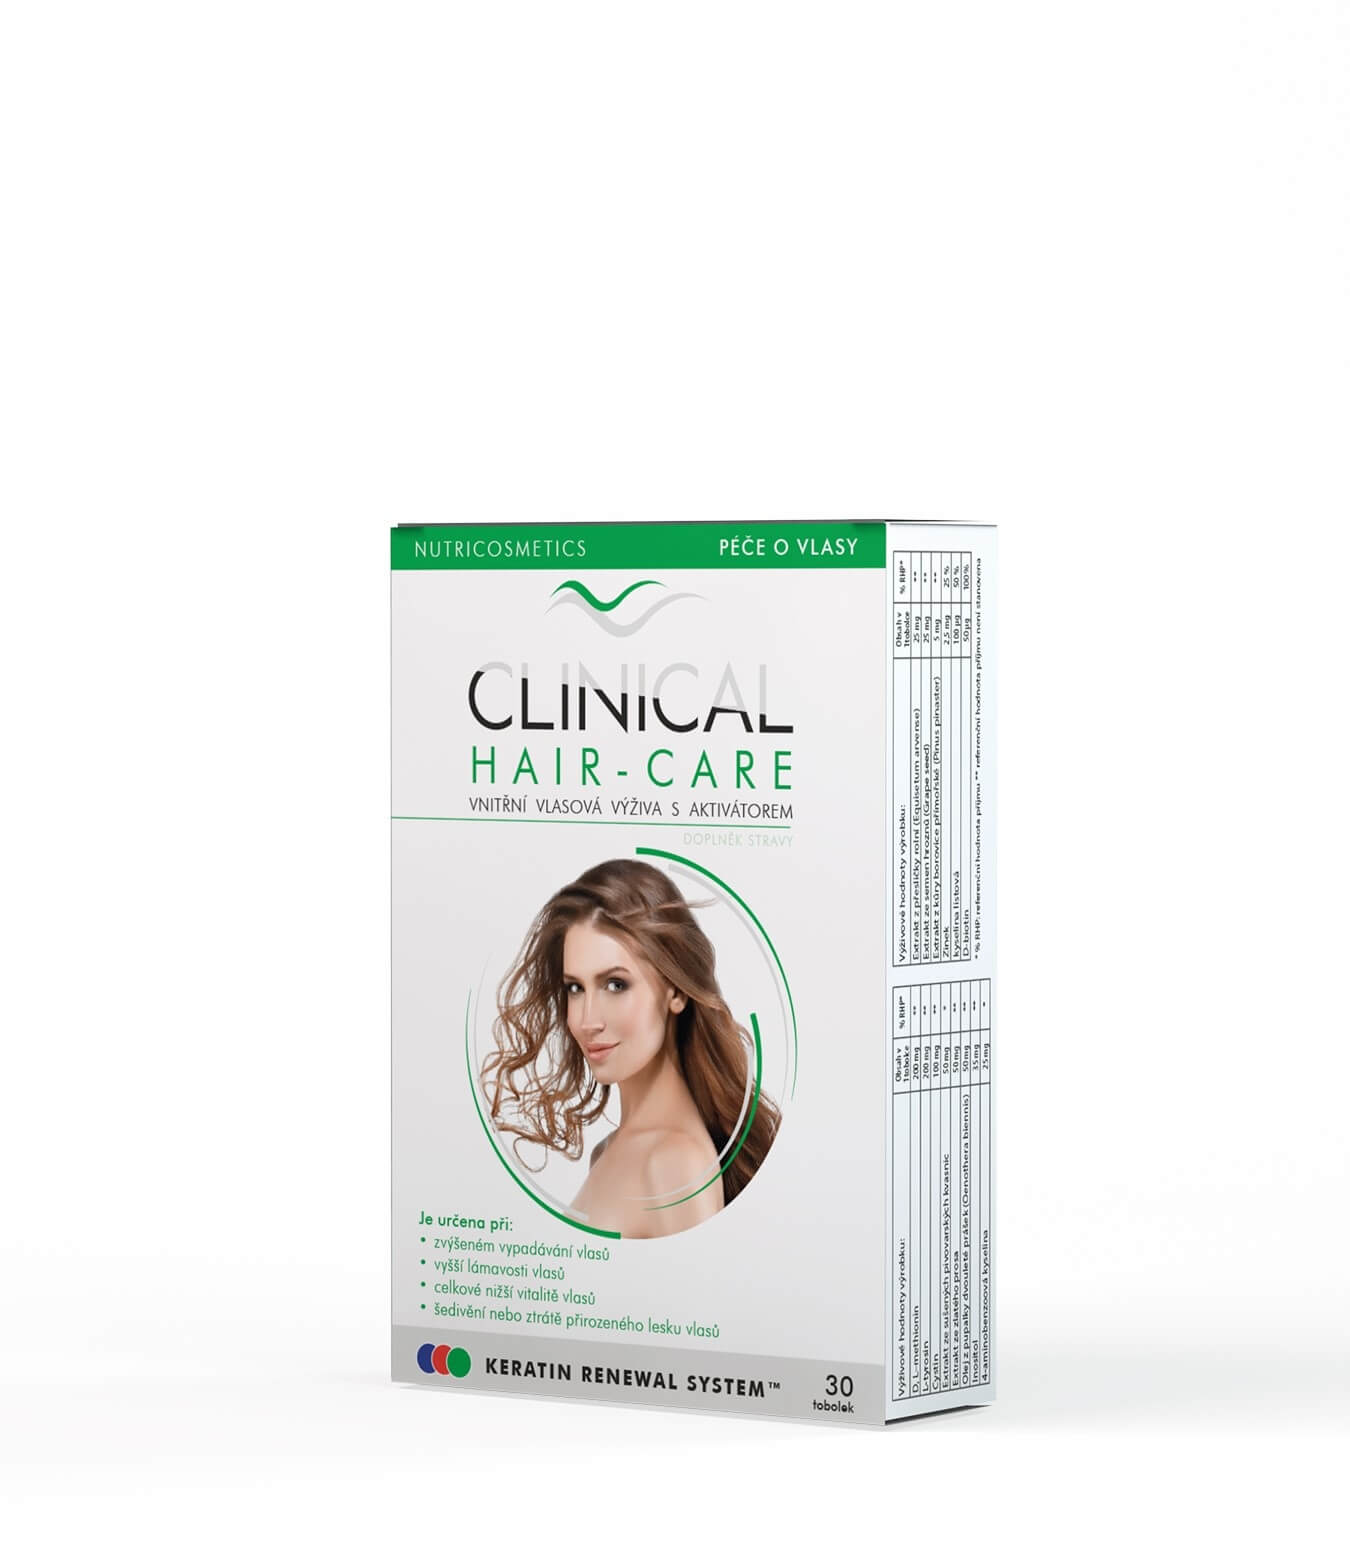 Clinical Clinical Hair-Care tob.30 - kúra na 1. měsíc